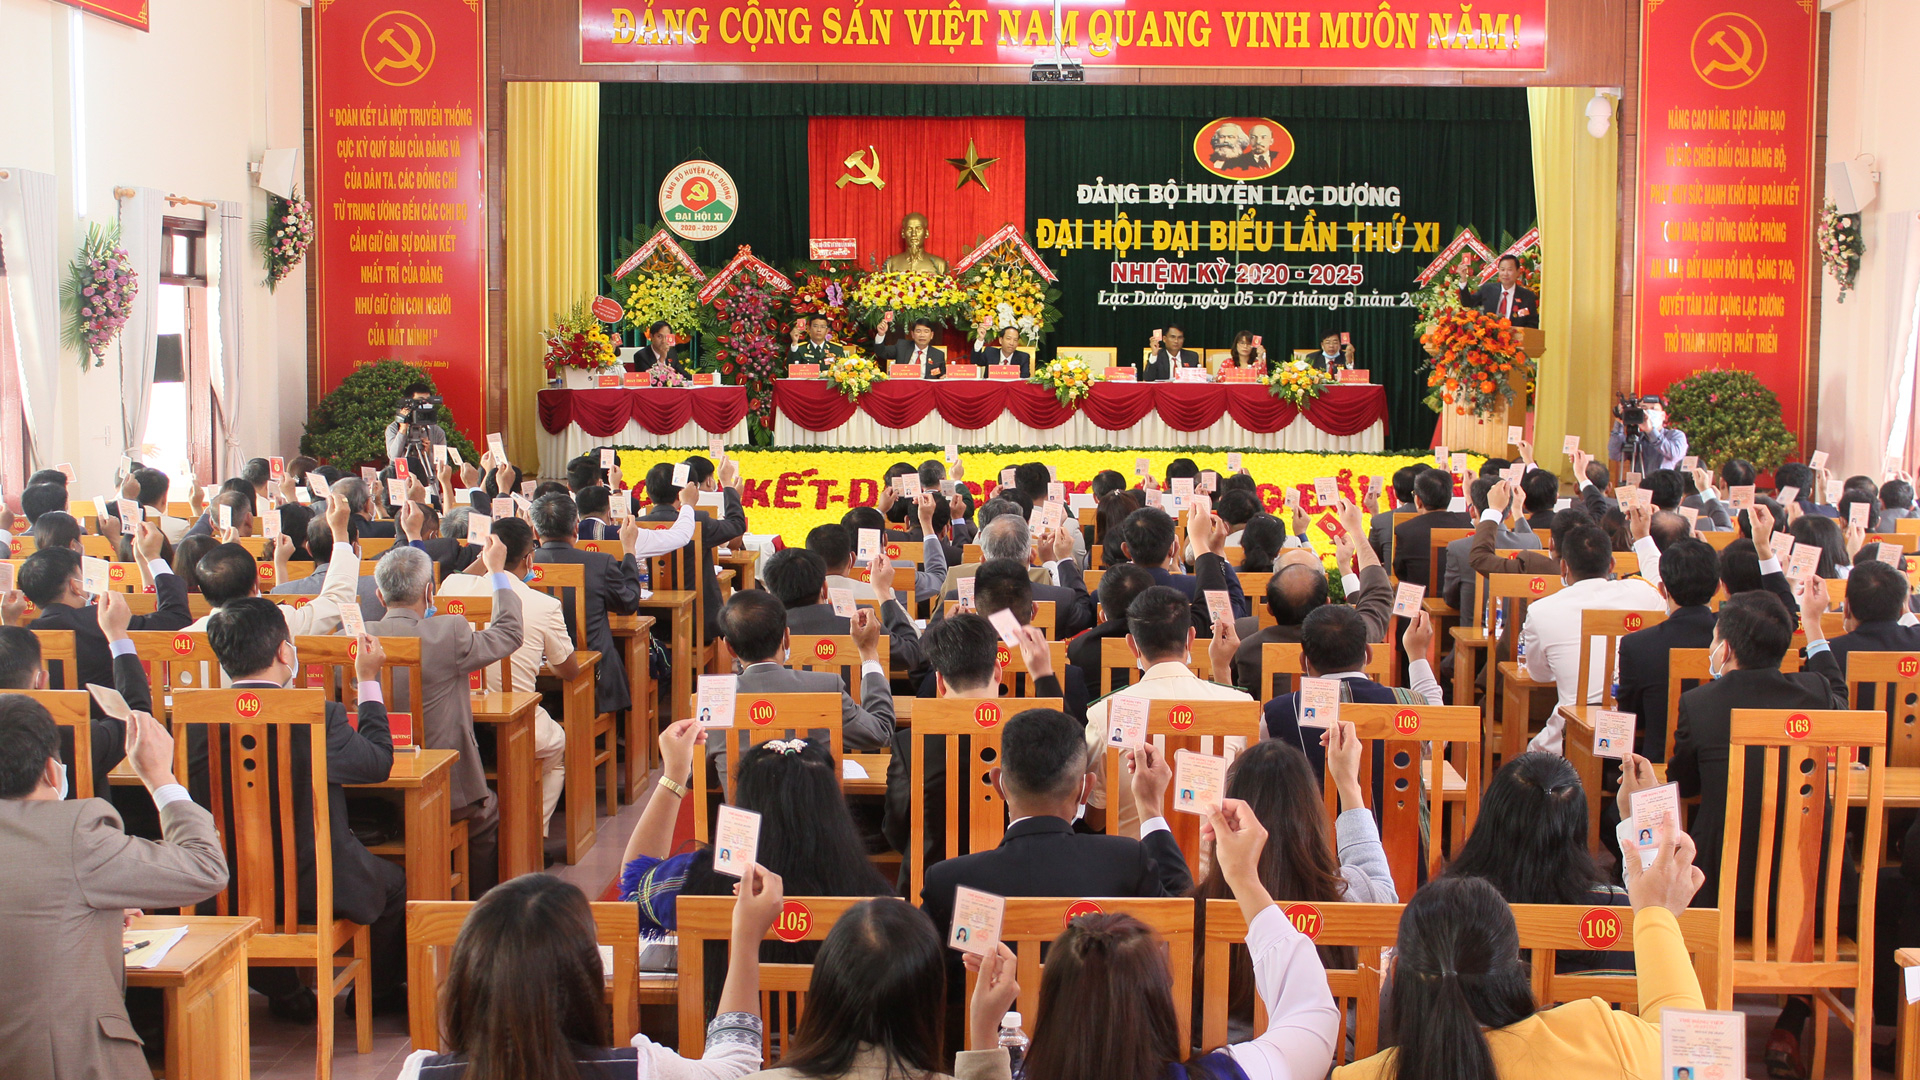 Quang cảnh Đại hội đại biểu Đảng bộ huyện Lạc Dương lần thứ XI, nhiệm kỳ 2020 - 2025